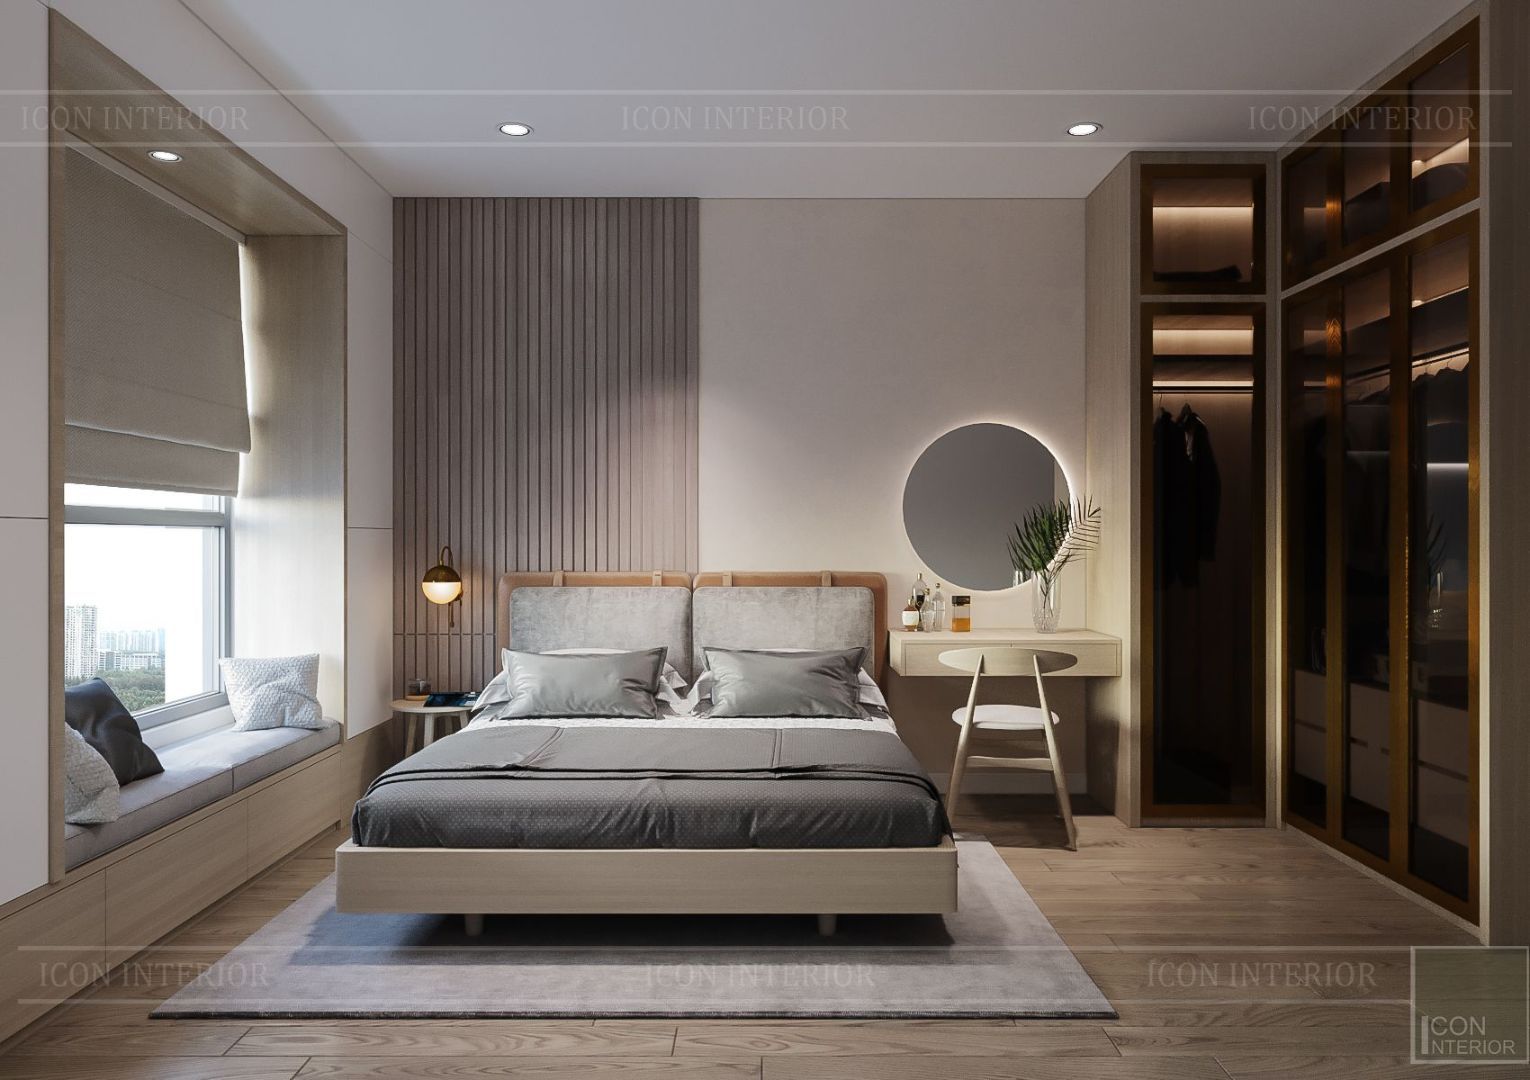 Nội thất phong cách tối giản Minimalism, ICON INTERIOR ICON INTERIOR Minimalist bedroom